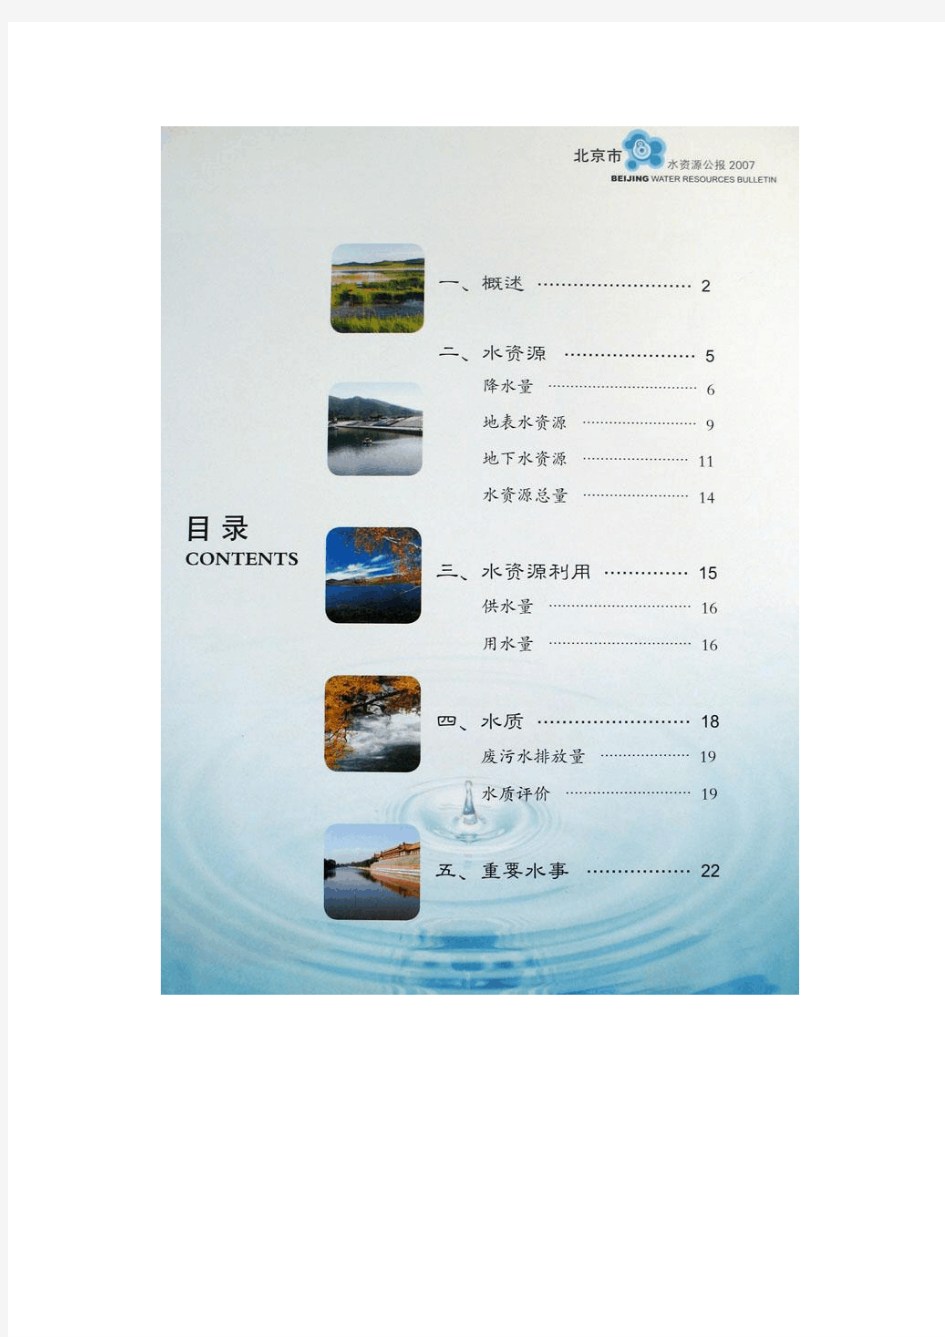 2007-北京市水资源公报